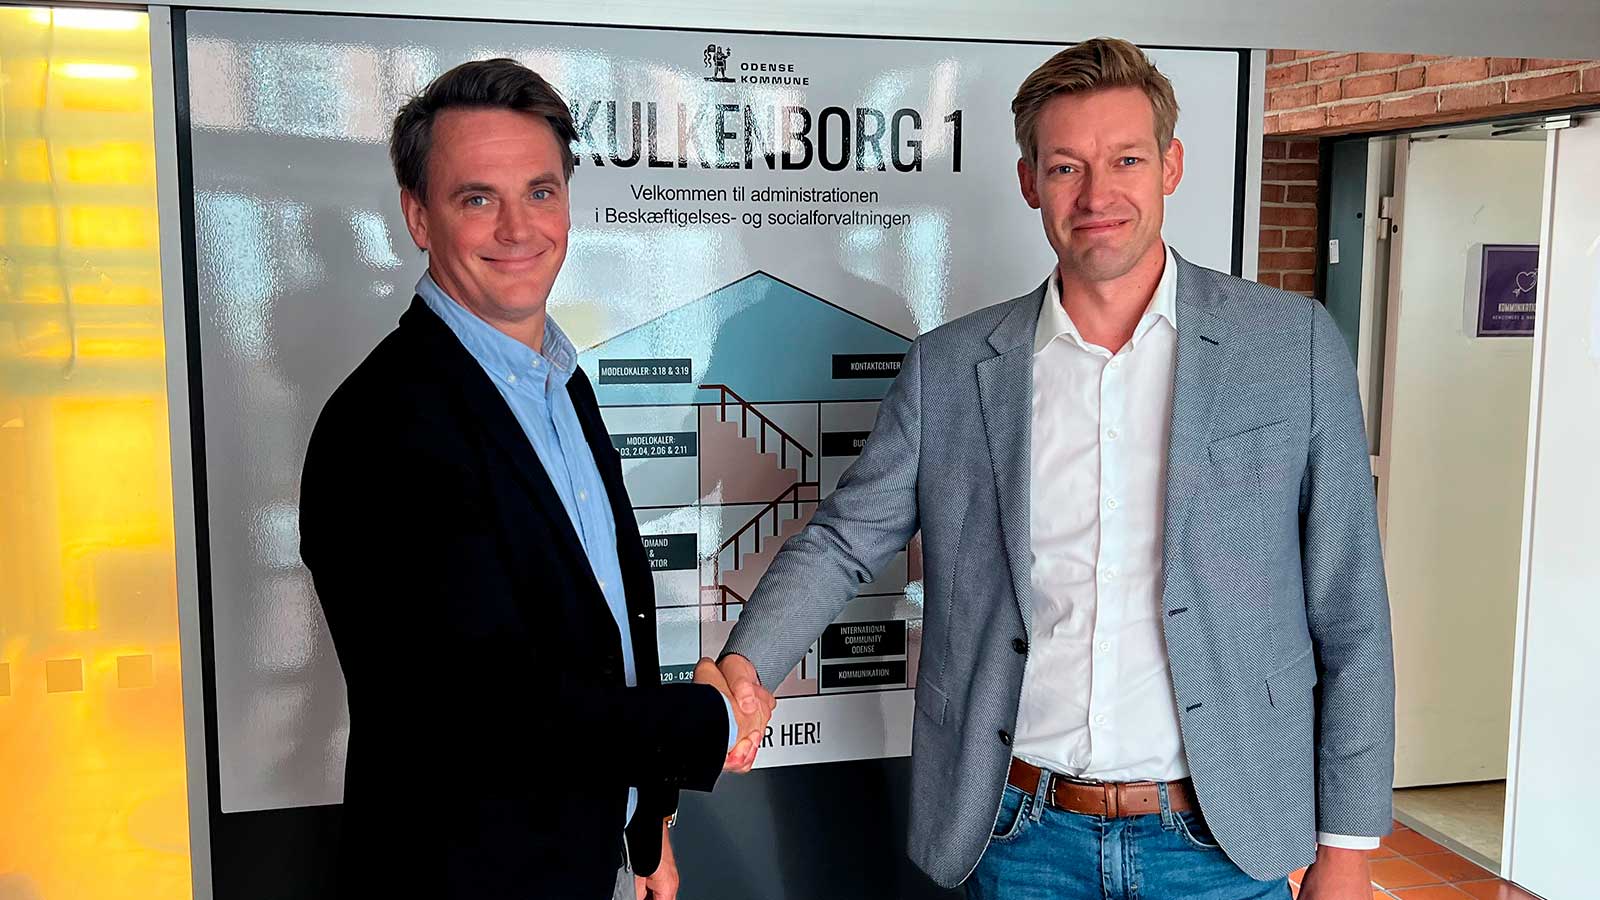 Fra venstre: Niels Brasch Bækholm, der er salgsansvarlig for beskæftigelsesområdet i KMD, bekræfter aftalen sammen med Gorm Hjelm Andersen, Koncernchef i Odense kommune.